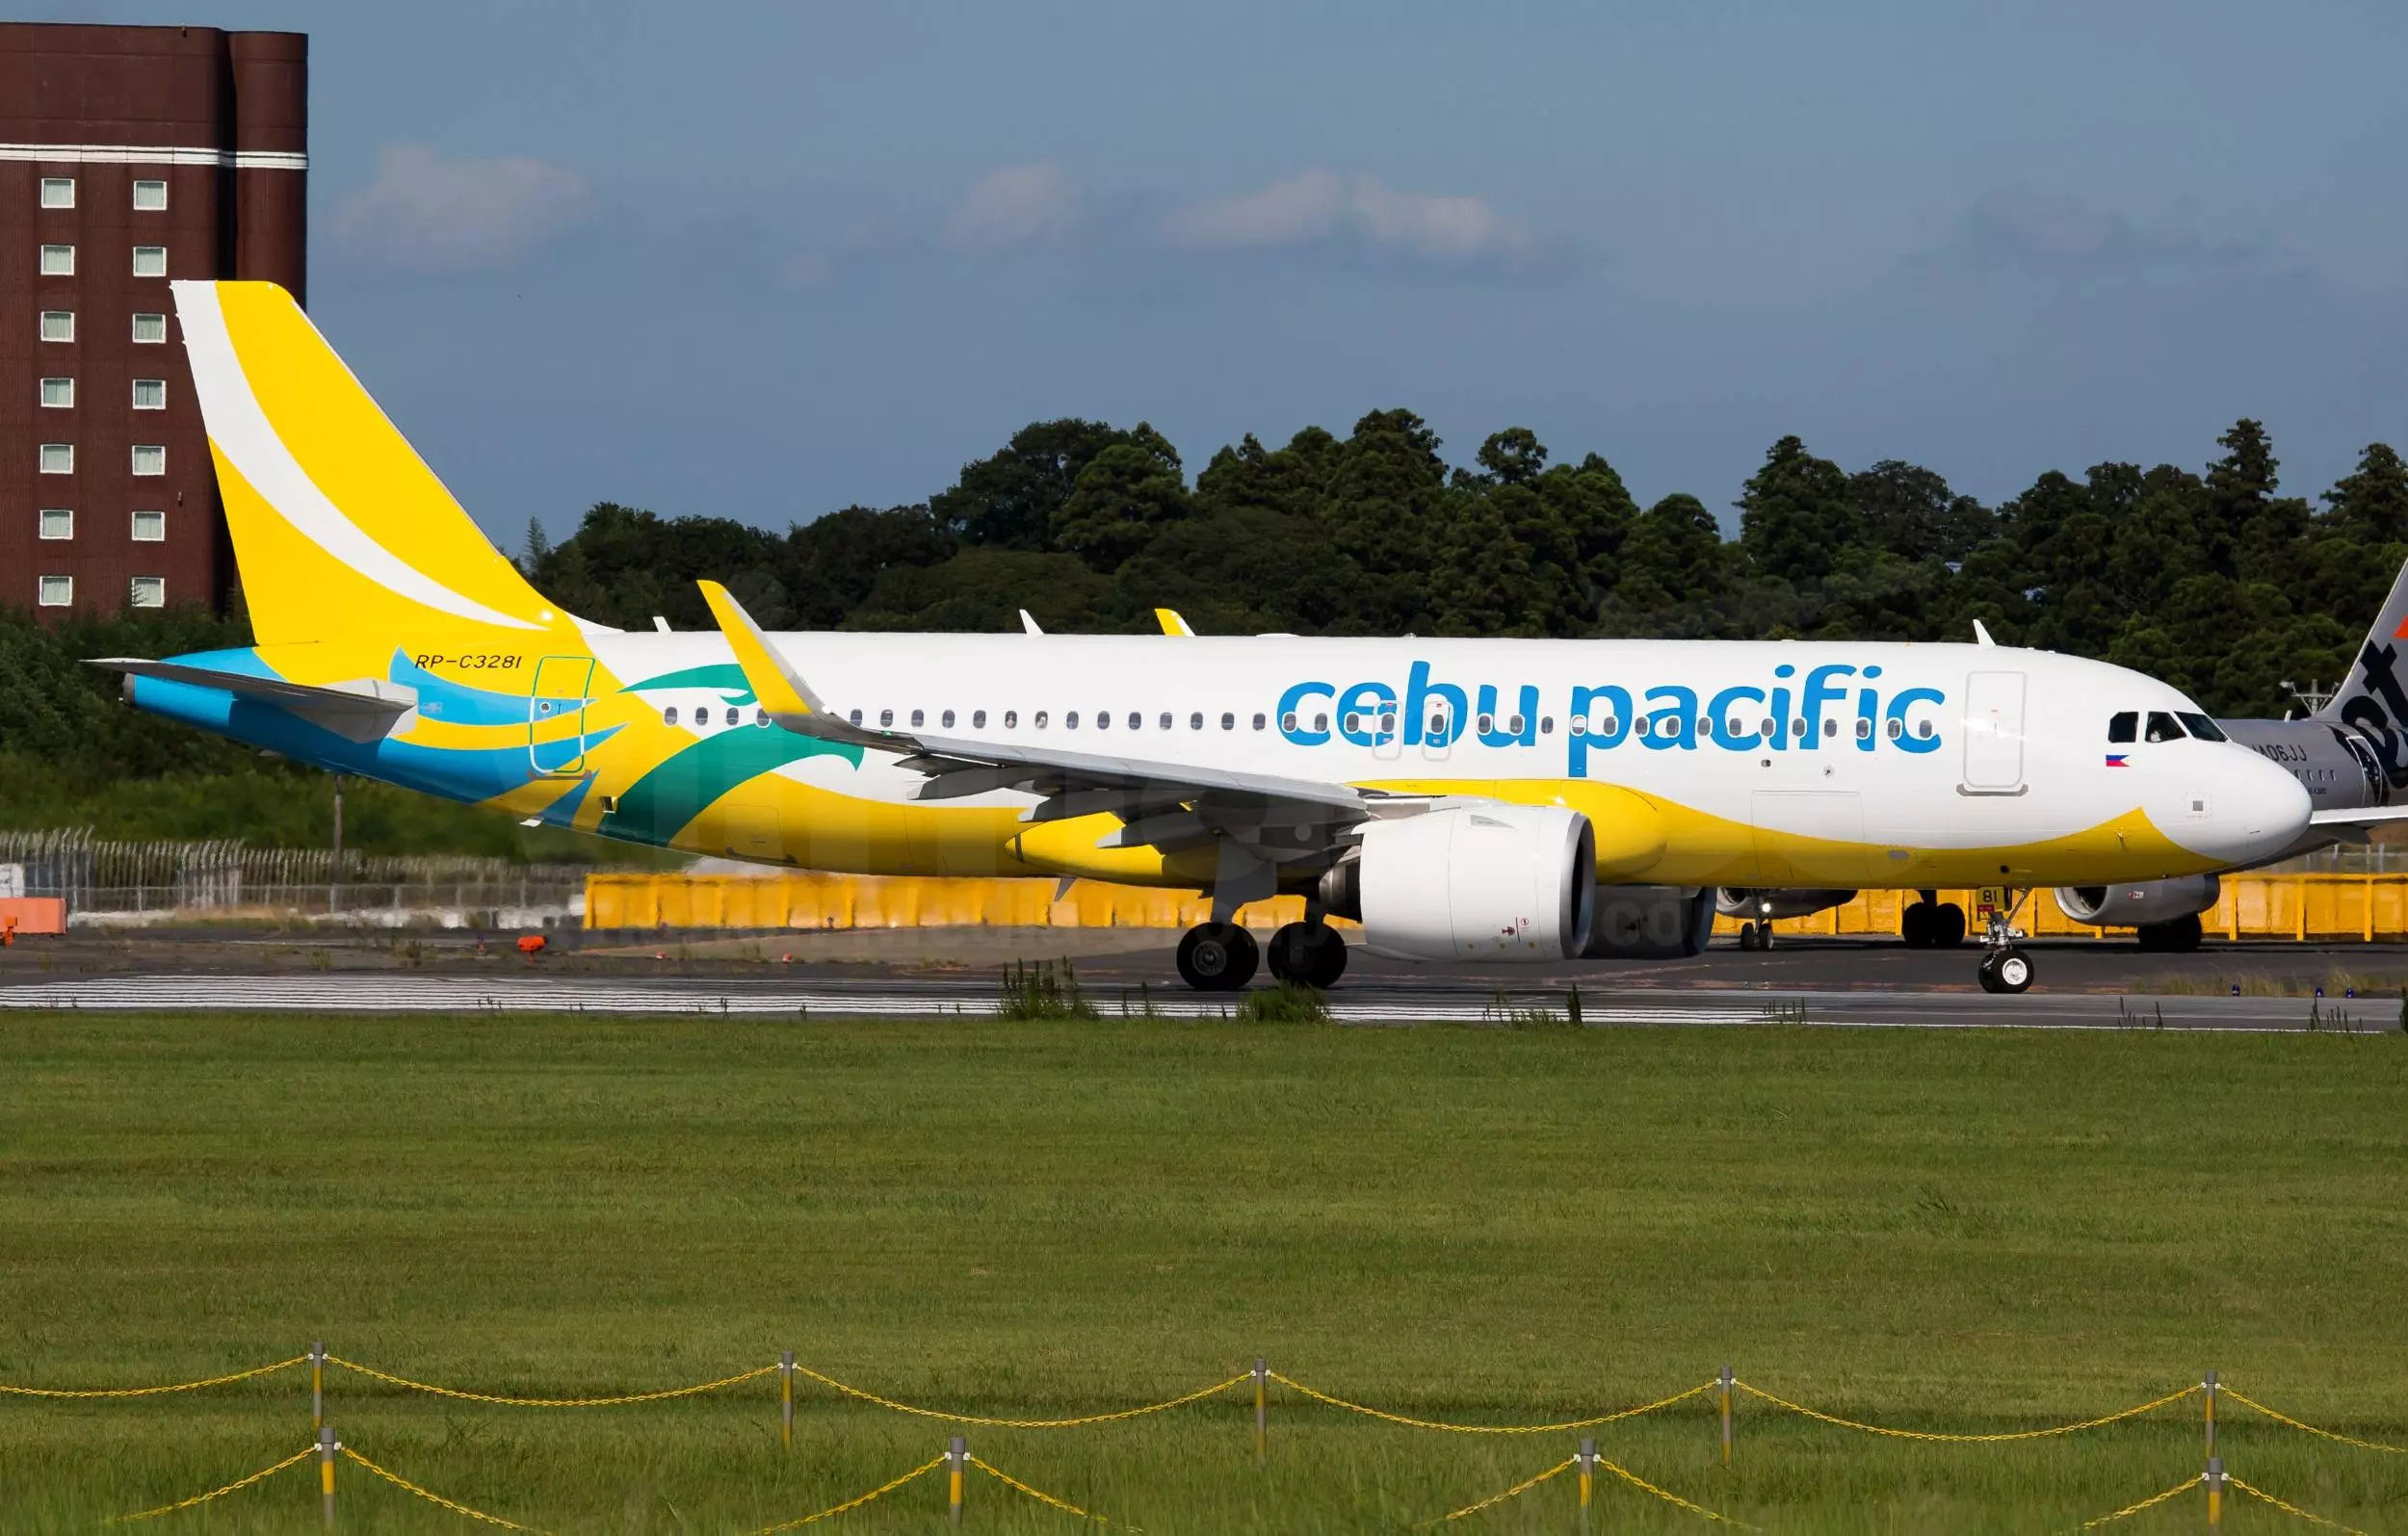 Себу пасифик эйр - отзывы пассажиров 2017-2018 про авиакомпанию cebu pacific air